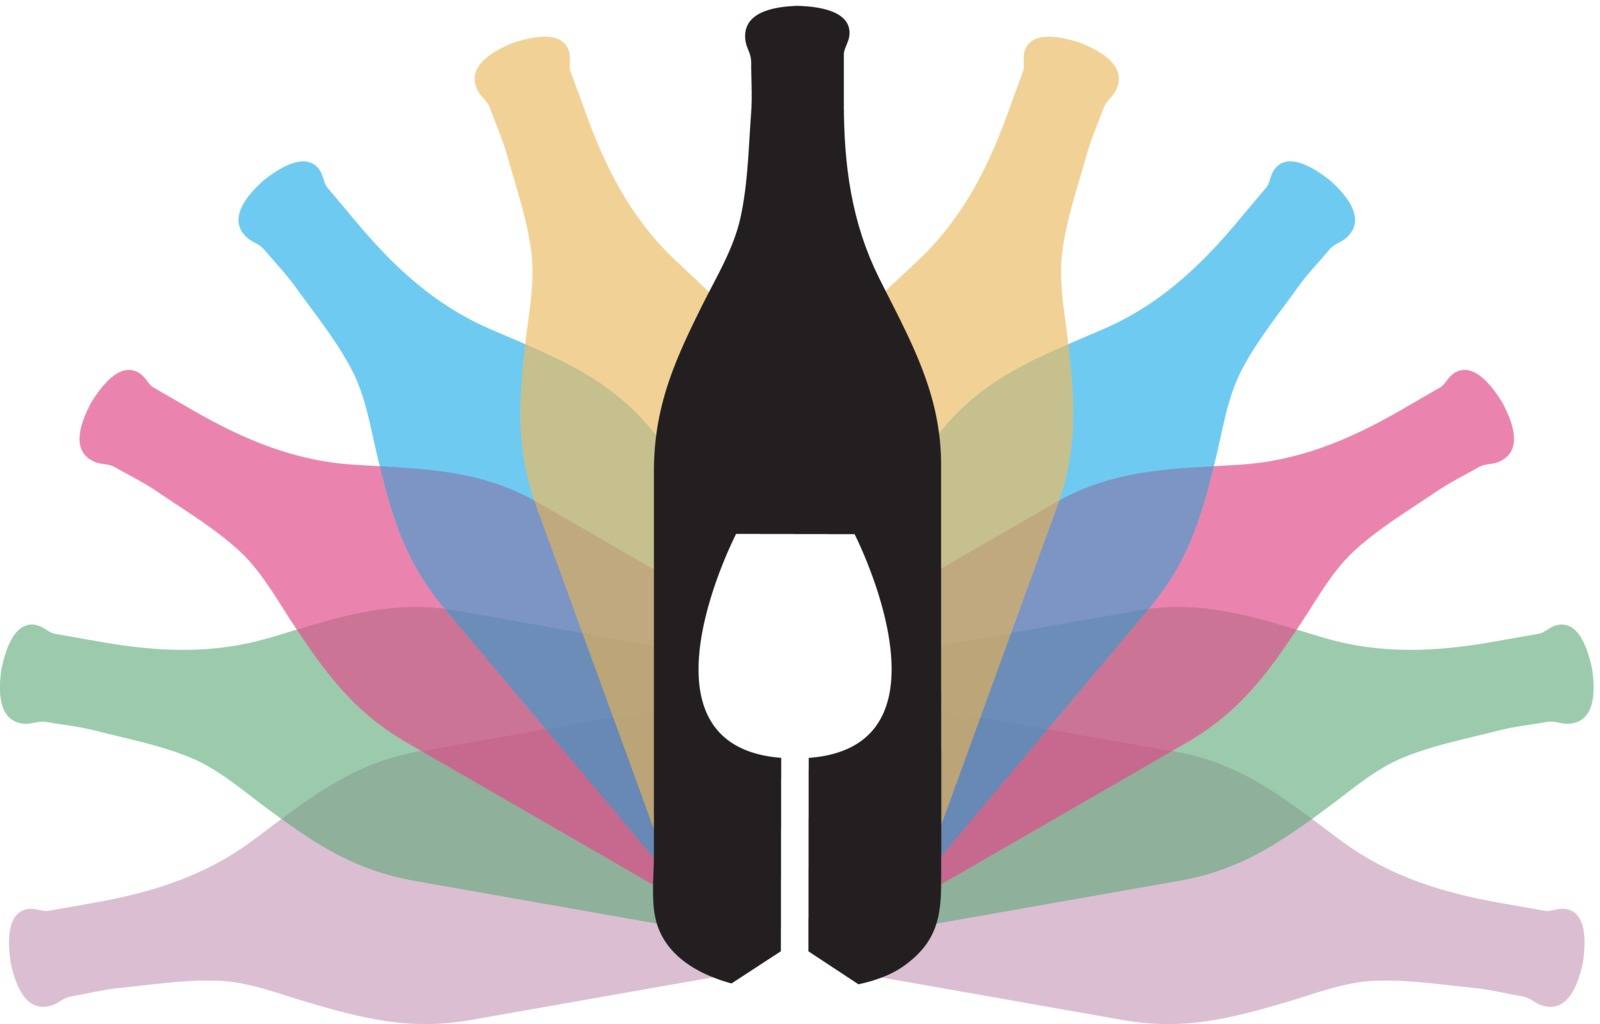 Beverage logo by shawlinmohd